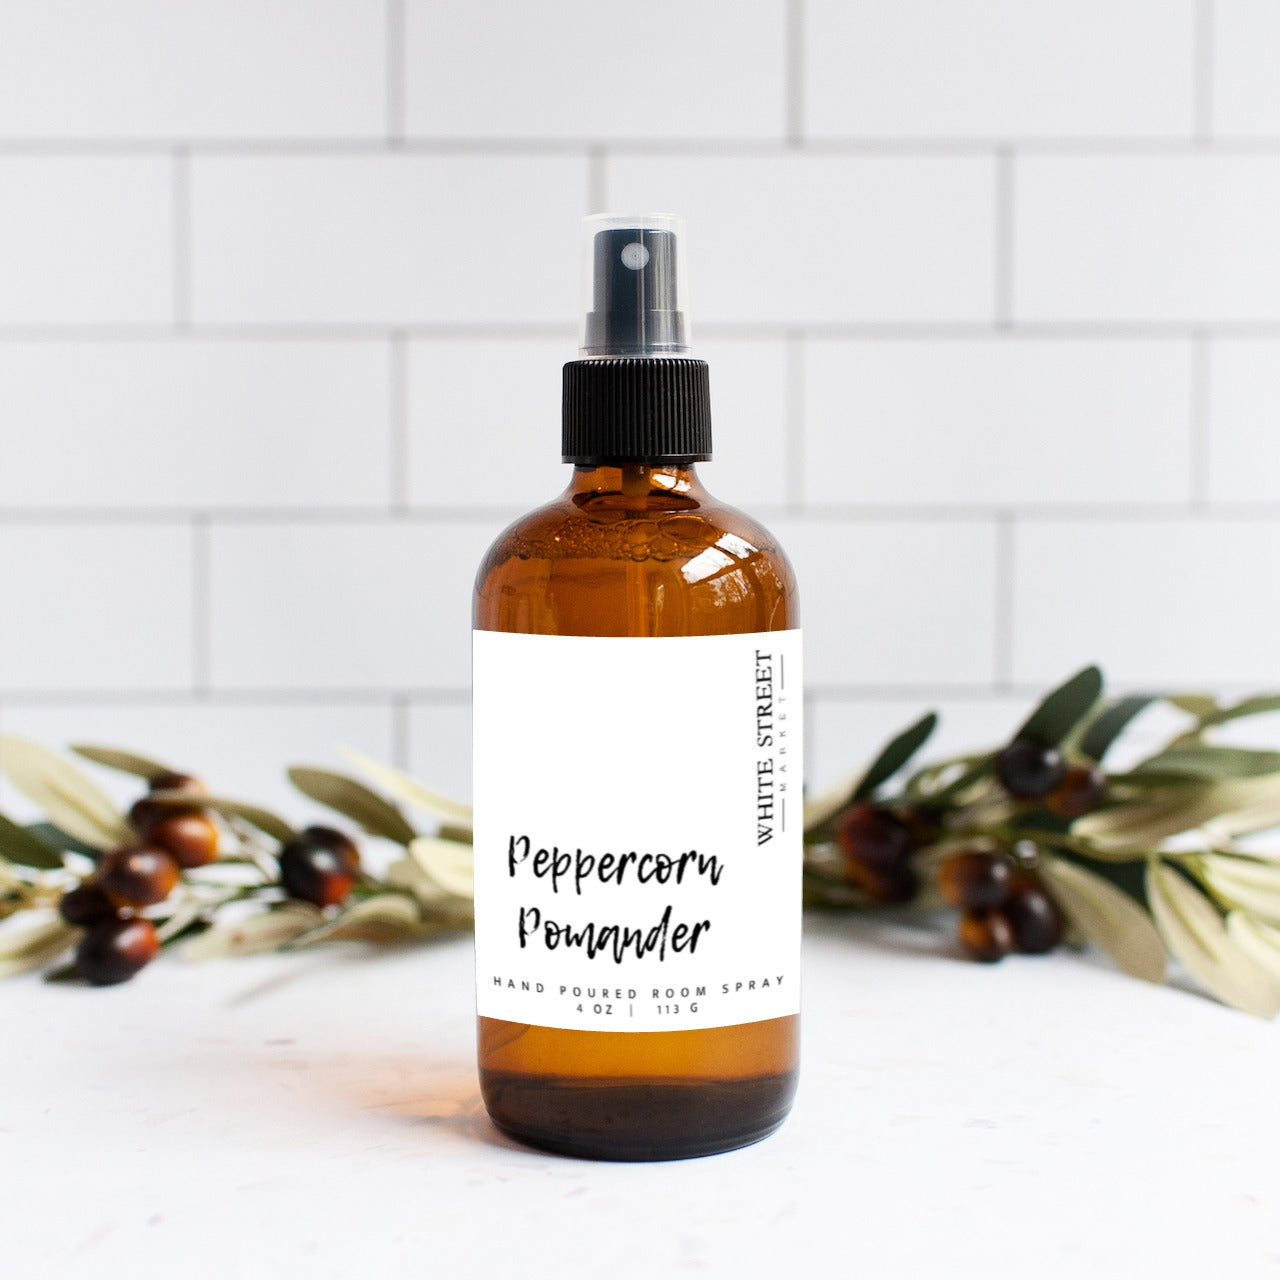 Peppercorn Pomander Room Spray - White Street Market